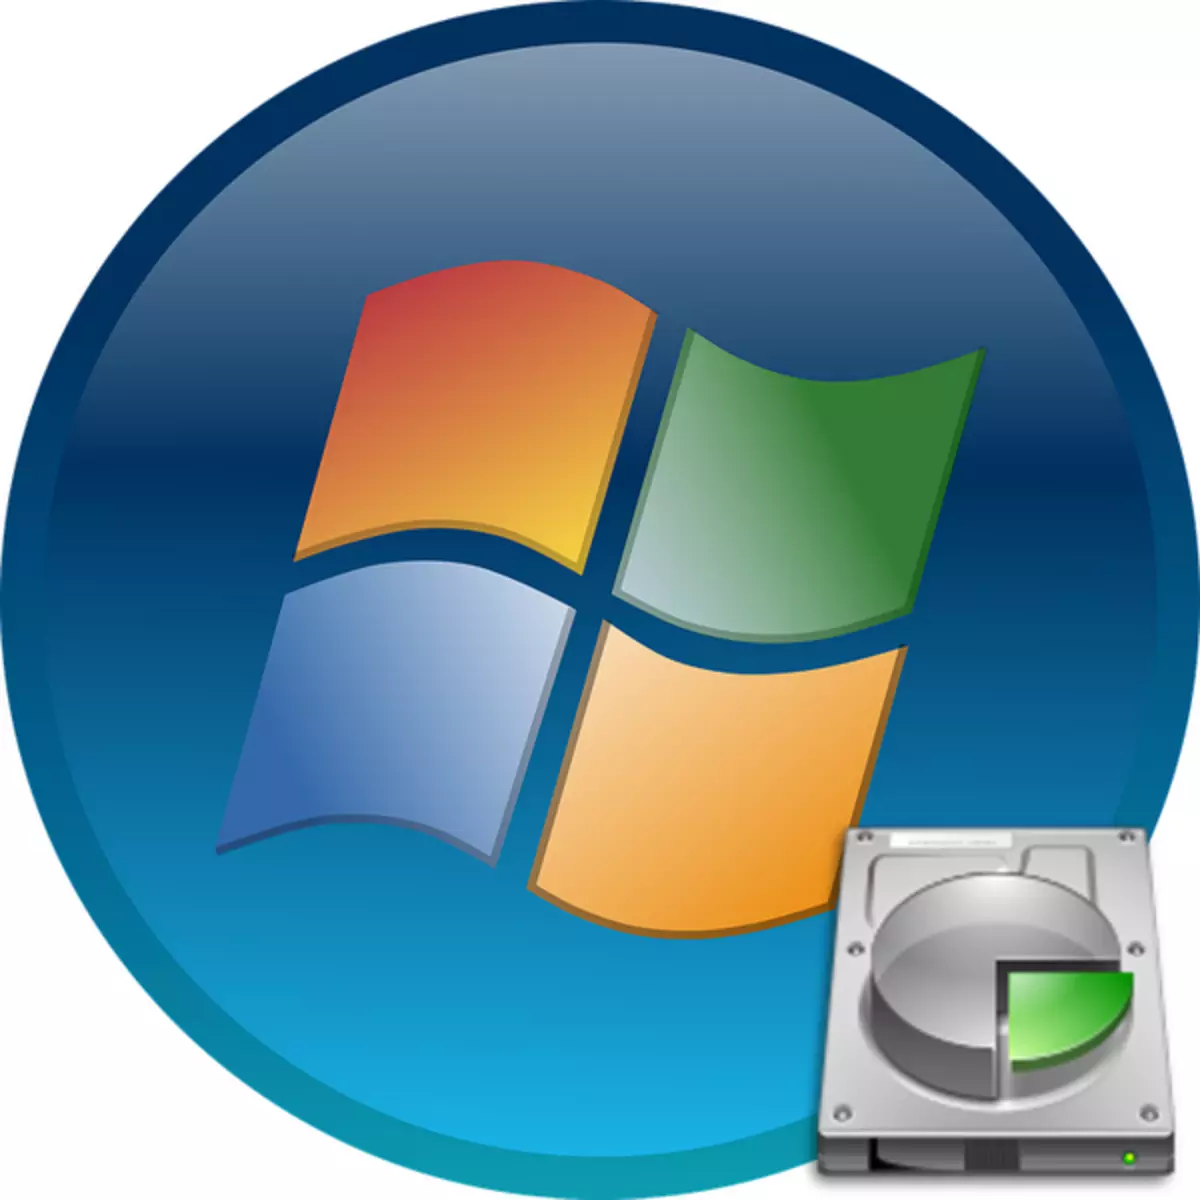 Як прибрати розділ "Зарезервовано системою" в Windows 7